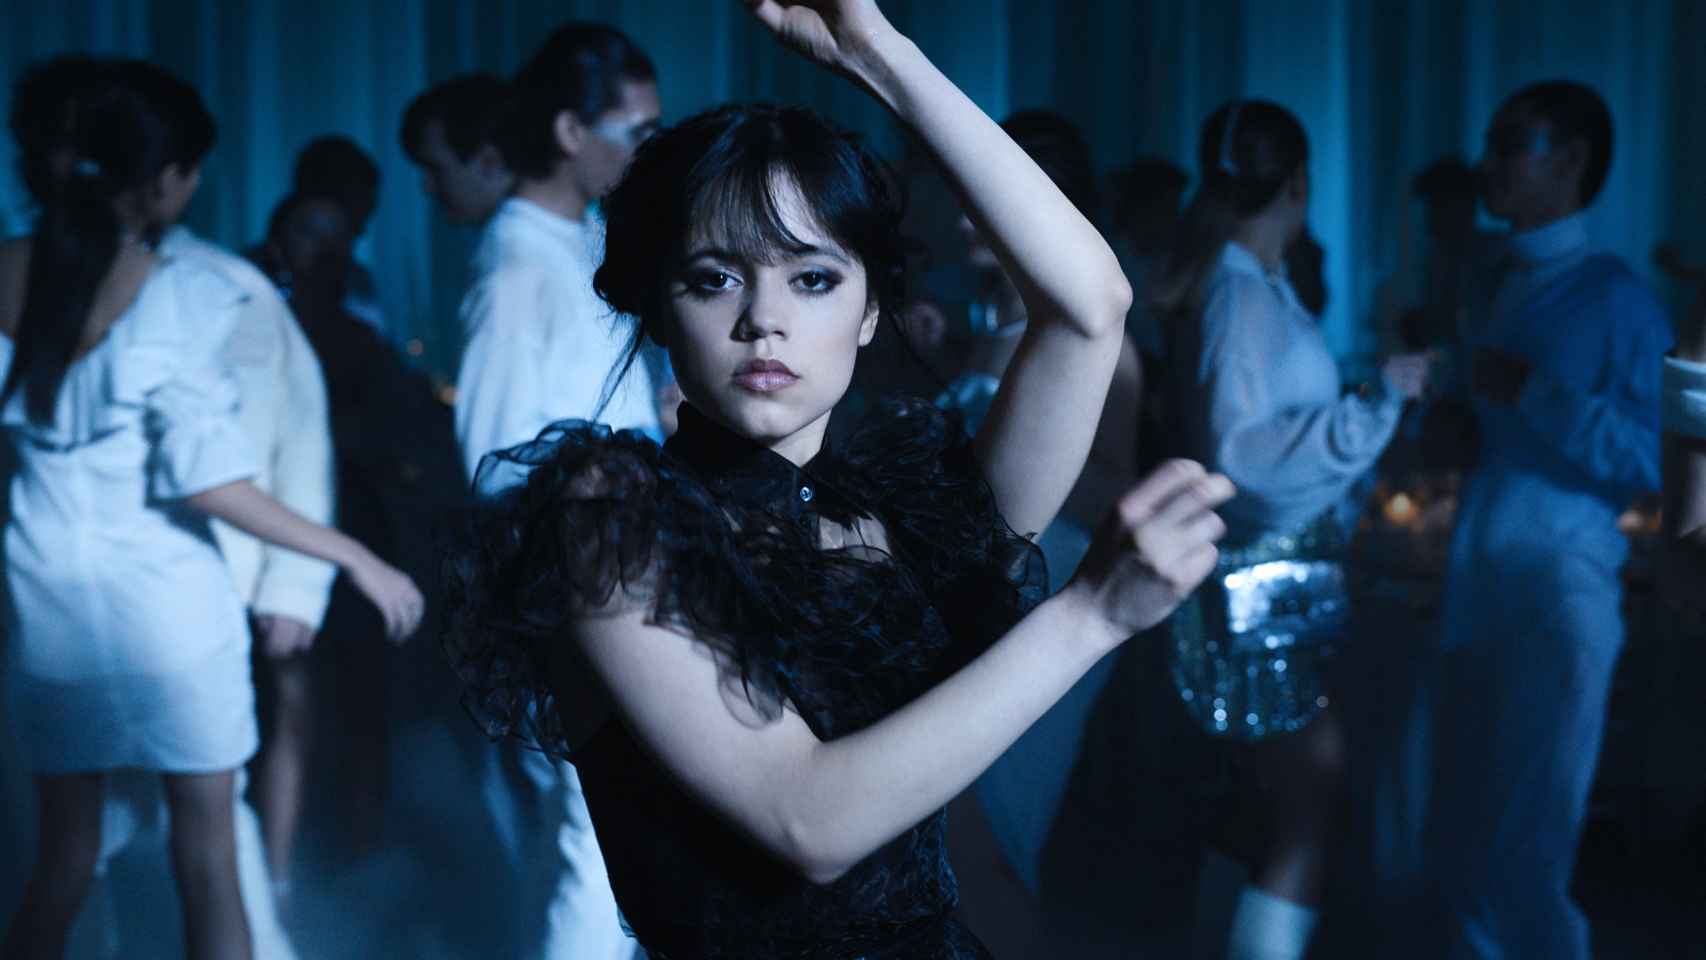 La escena del baile es una de las más icónicas de la serie.